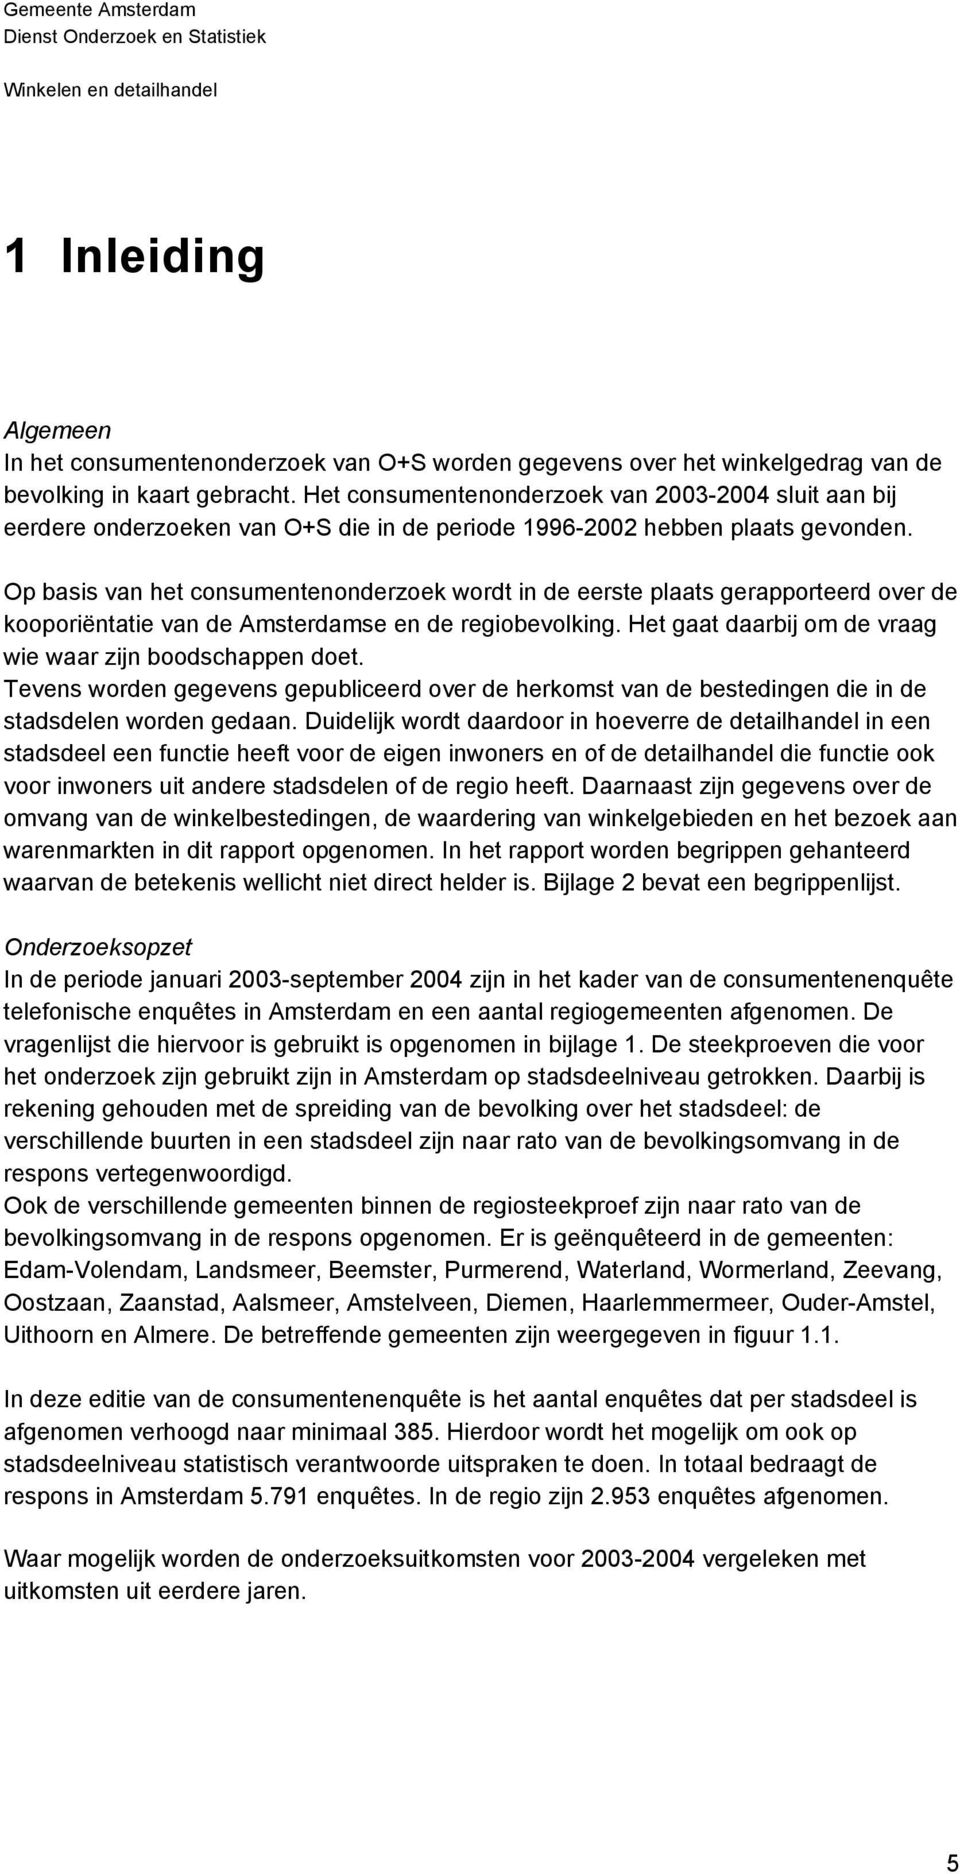 Op basis van het consumentenonderzoek wordt in de eerste plaats gerapporteerd over de kooporiëntatie van de Amsterdamse en de regiobevolking.